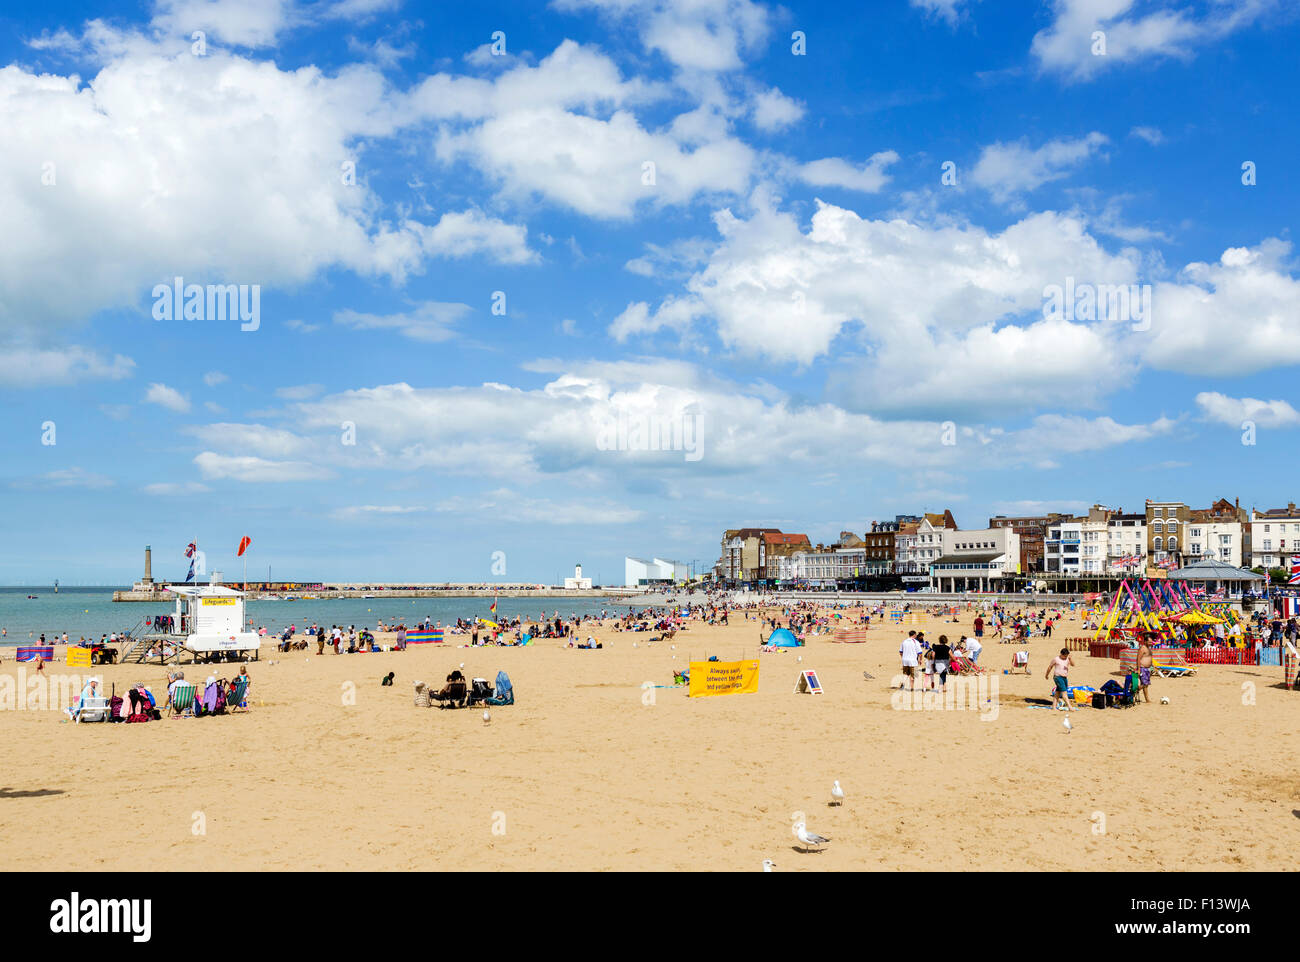 La plage de Margate, Kent, England, UK Banque D'Images